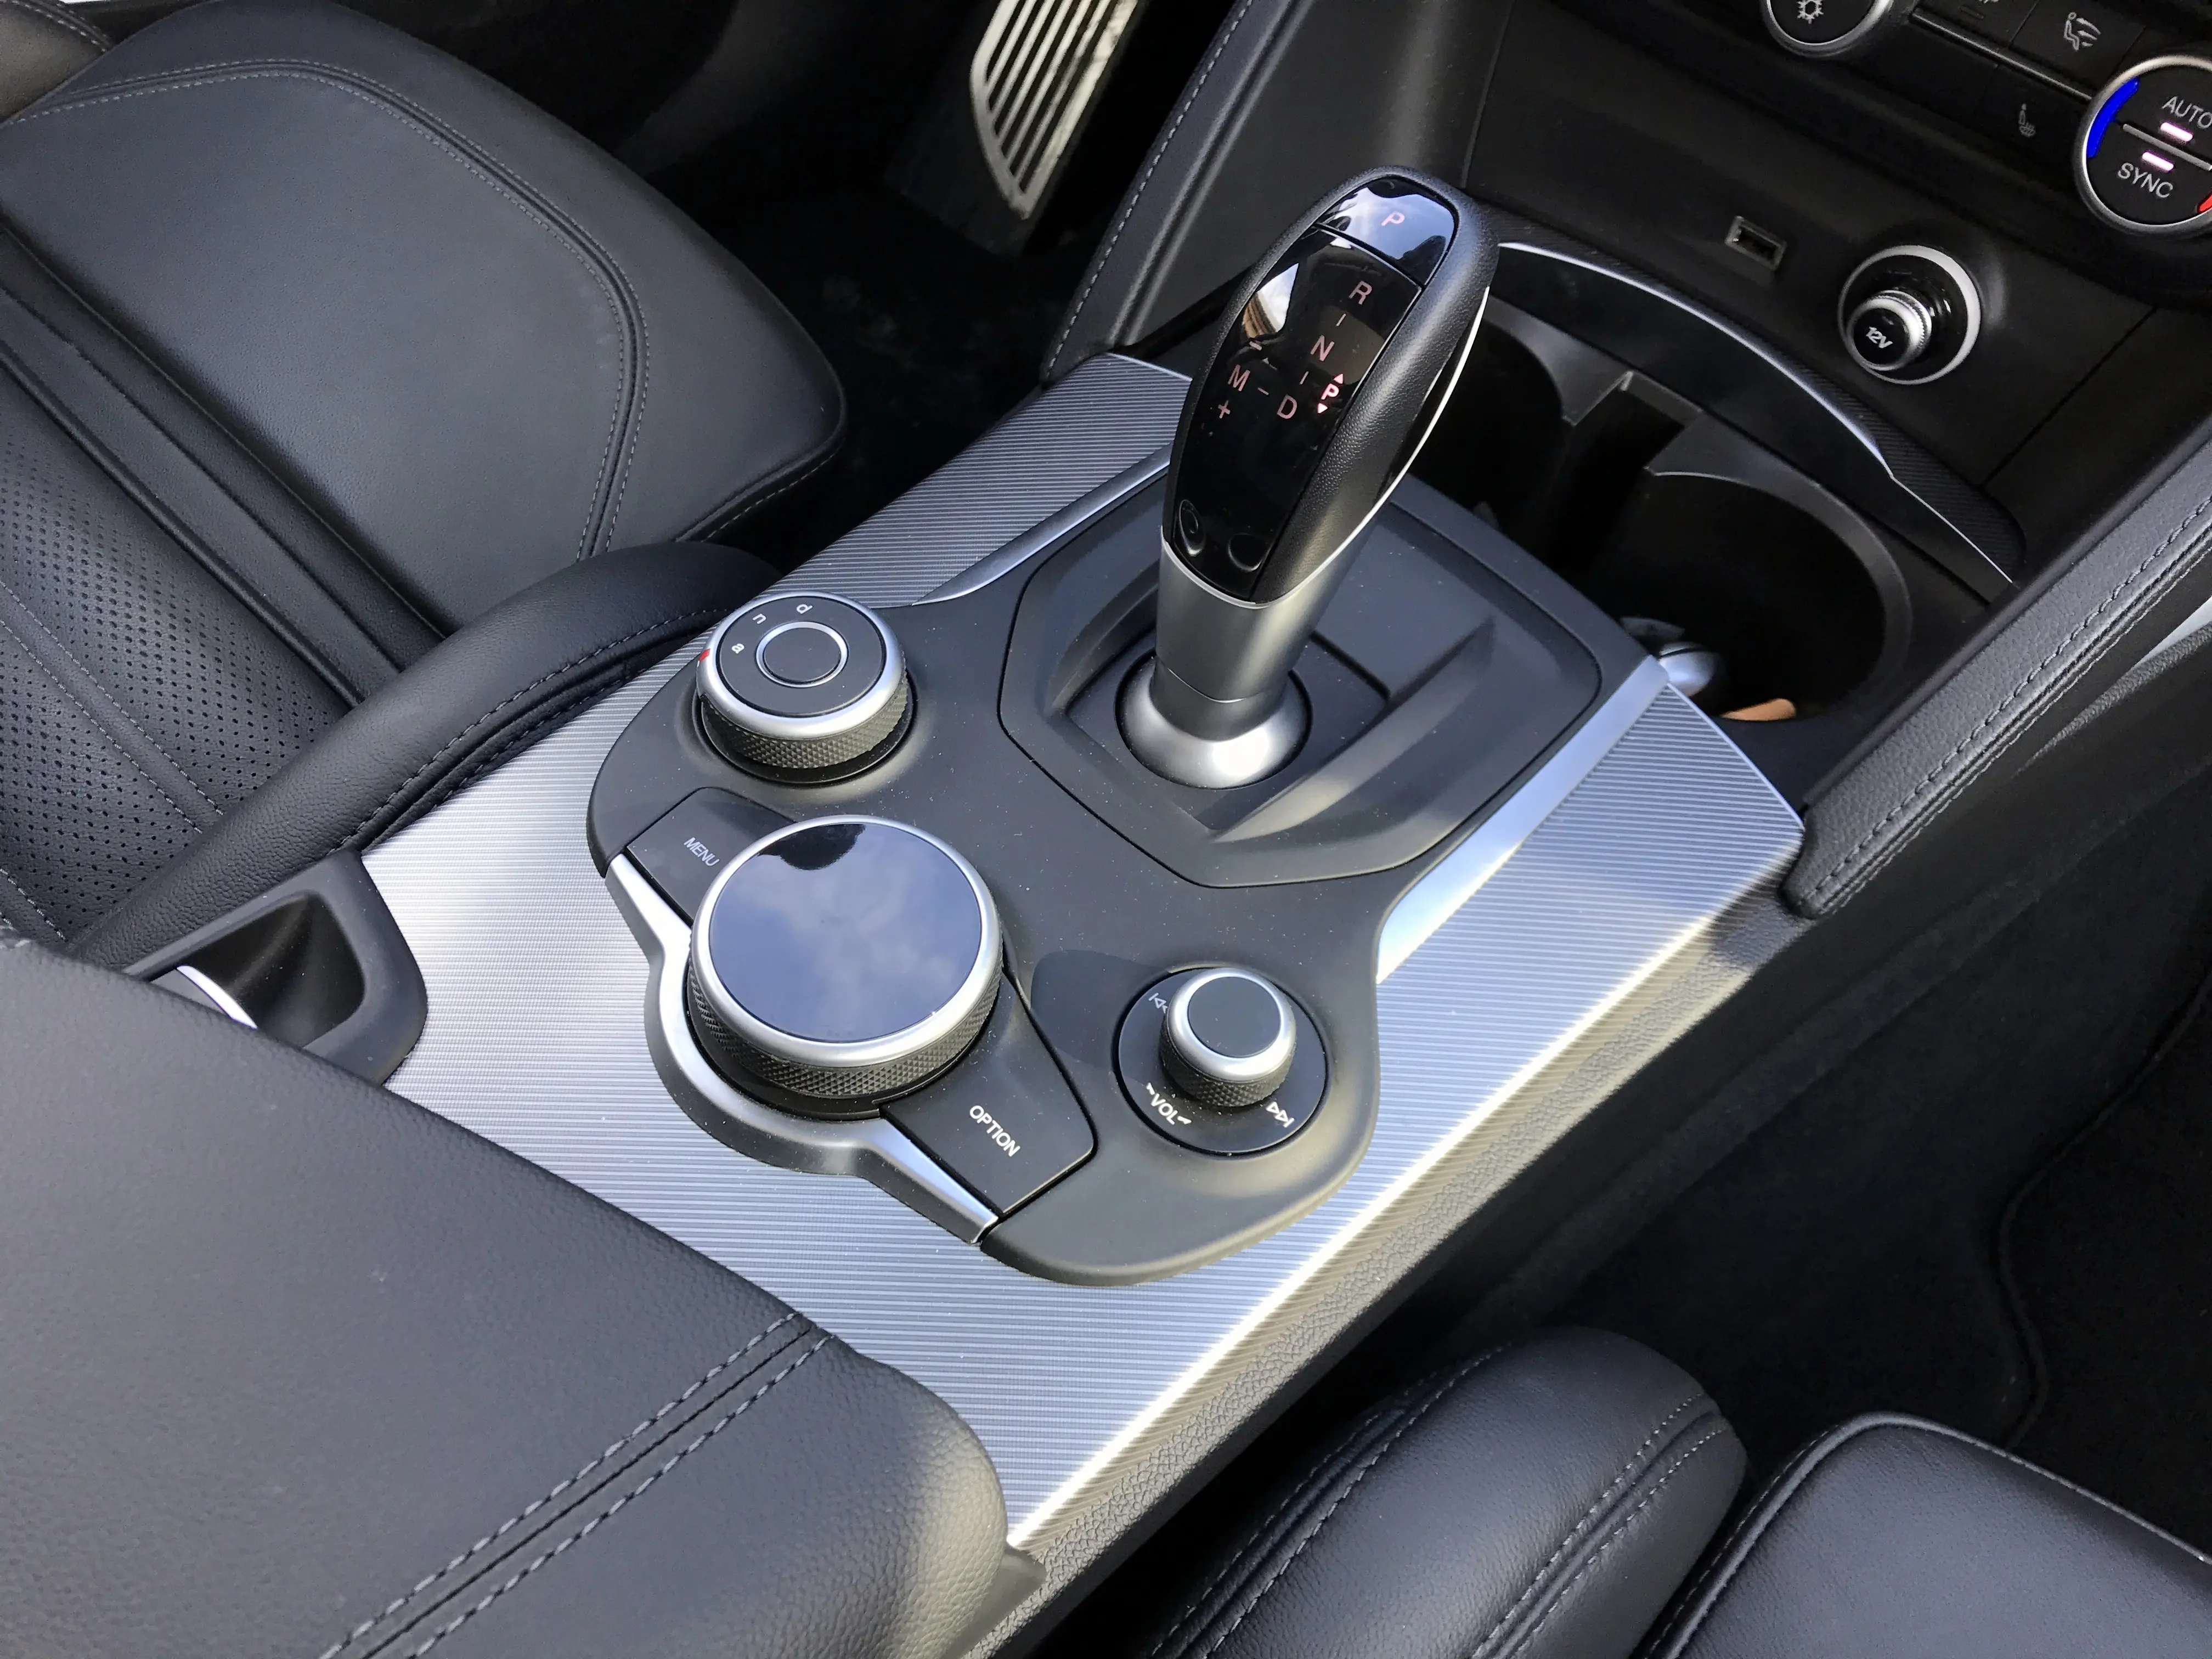 שלושה כפתורים, הימני לווליום, החוגה הגדולה שולטת במערכת המולטימדיה והשמאלית משמשת את בורר מצבי הנהיגה